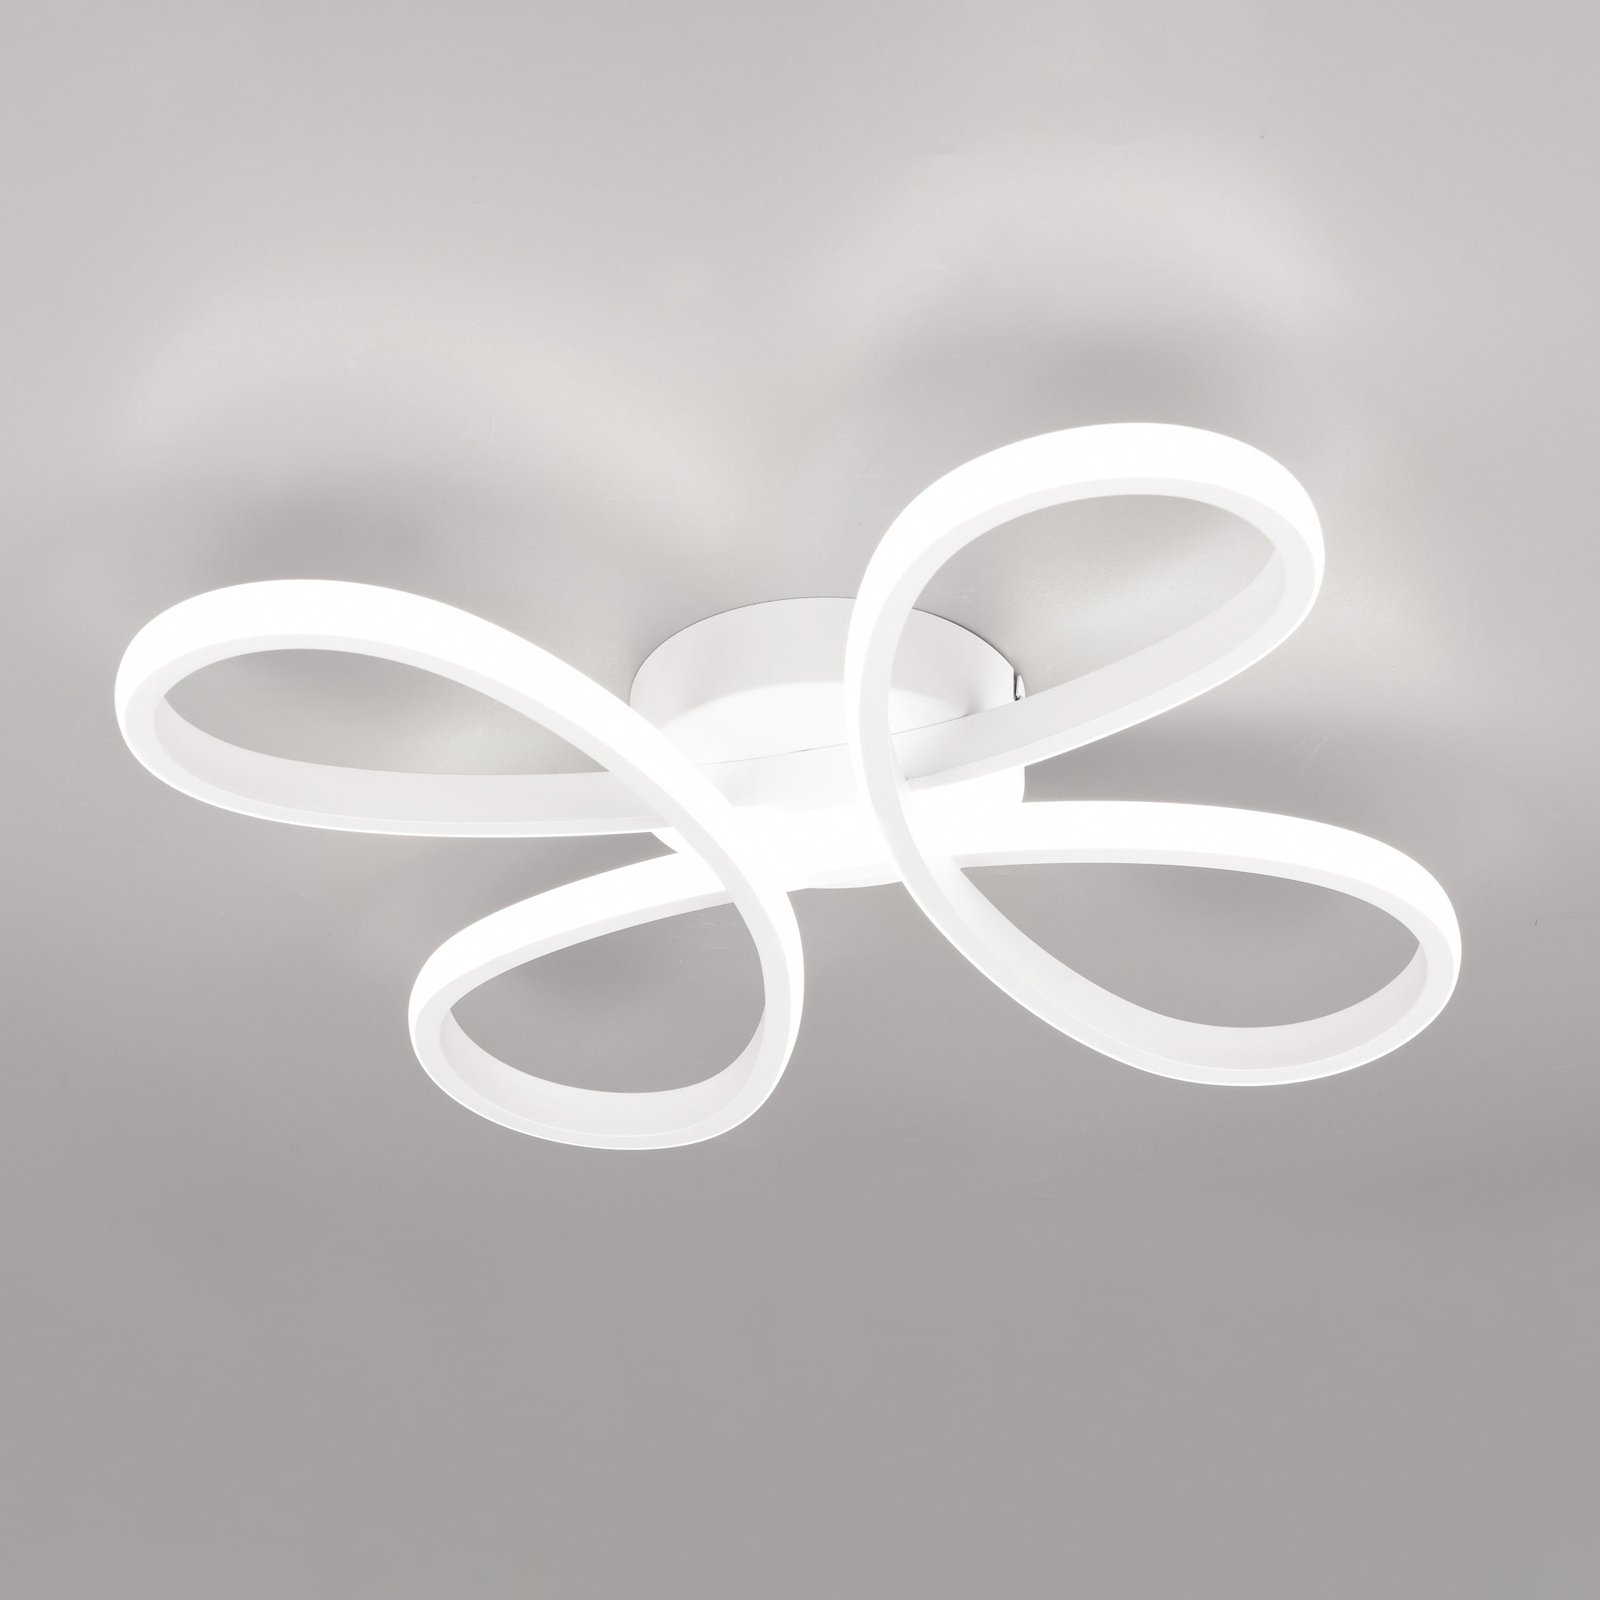 LED ceiling light Fly, matt white, 4,000 K, 40 cm x 40 cm